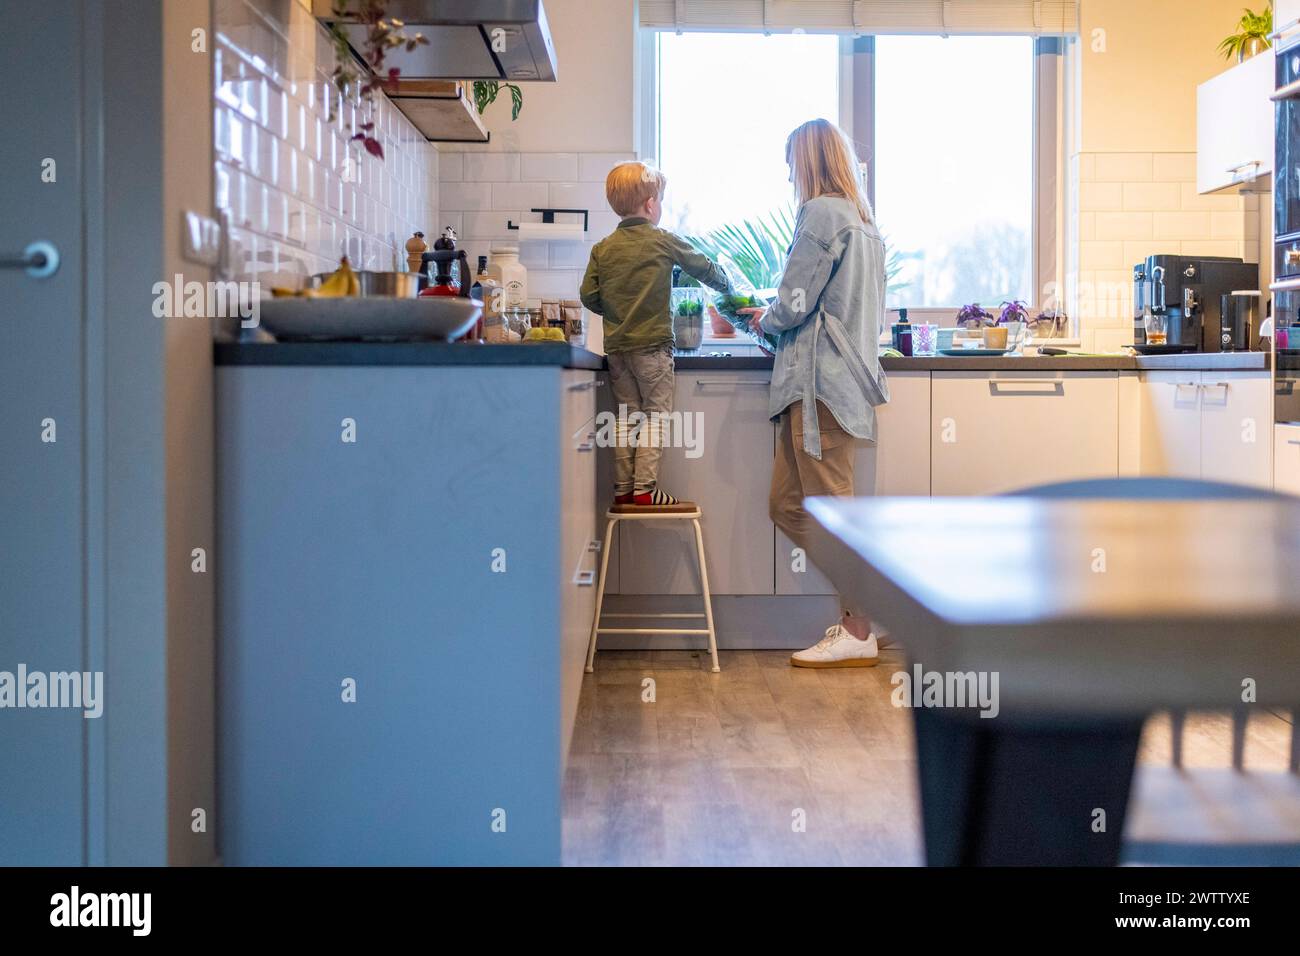 Un niño ayuda a un adulto a cocinar en una acogedora cocina bañada por una cálida luz natural. Foto de stock